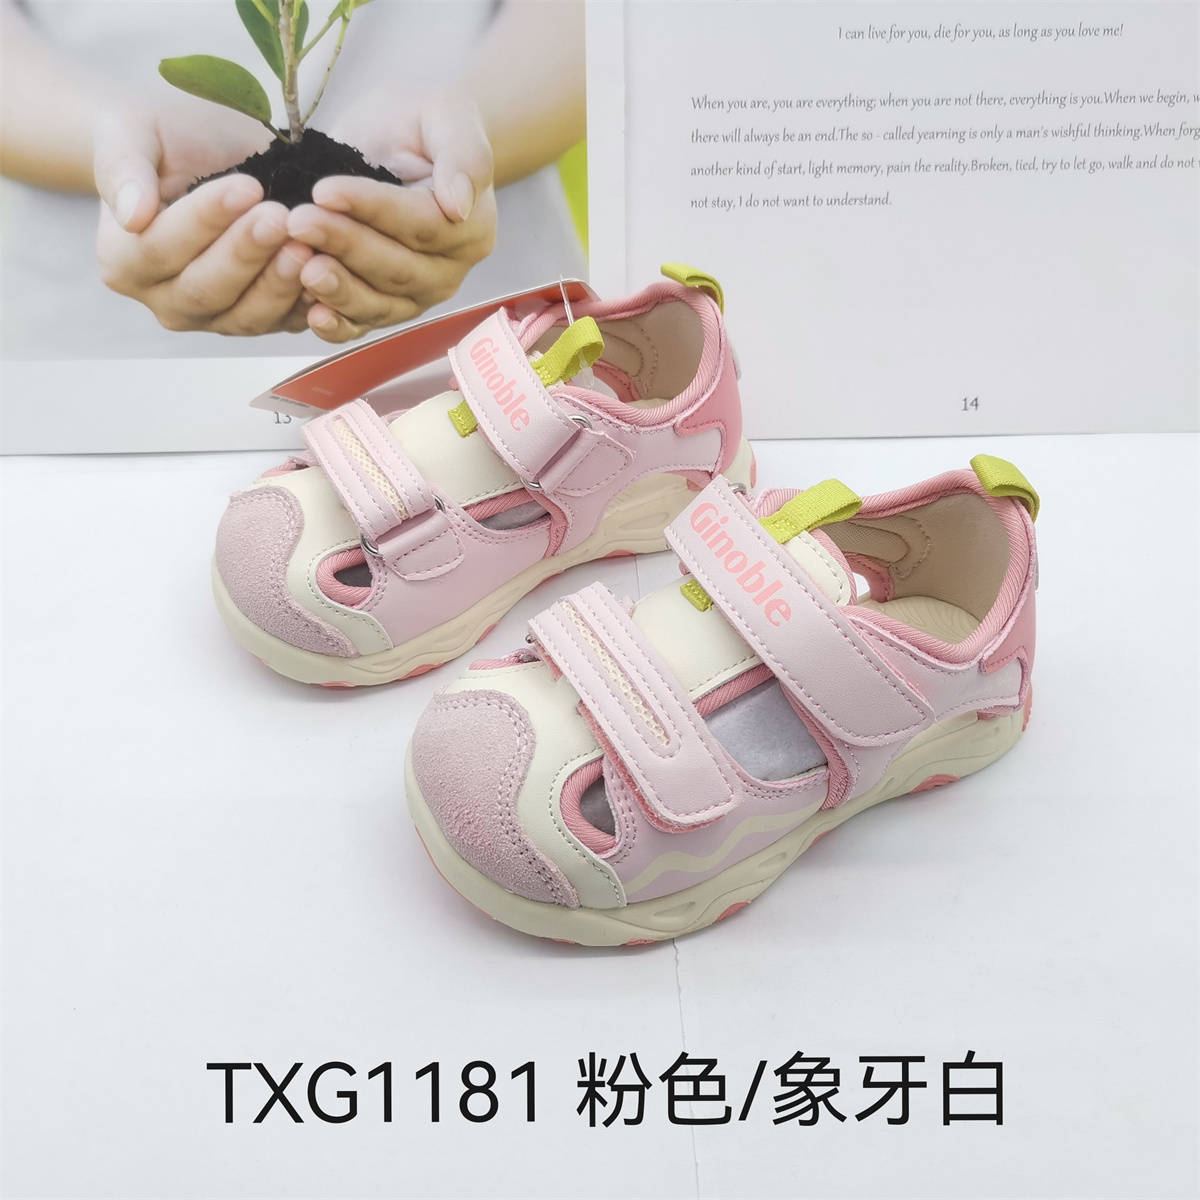 基诺浦夏款机能鞋凉鞋男童女童运动鞋跑步鞋TXG1181.1182.1183